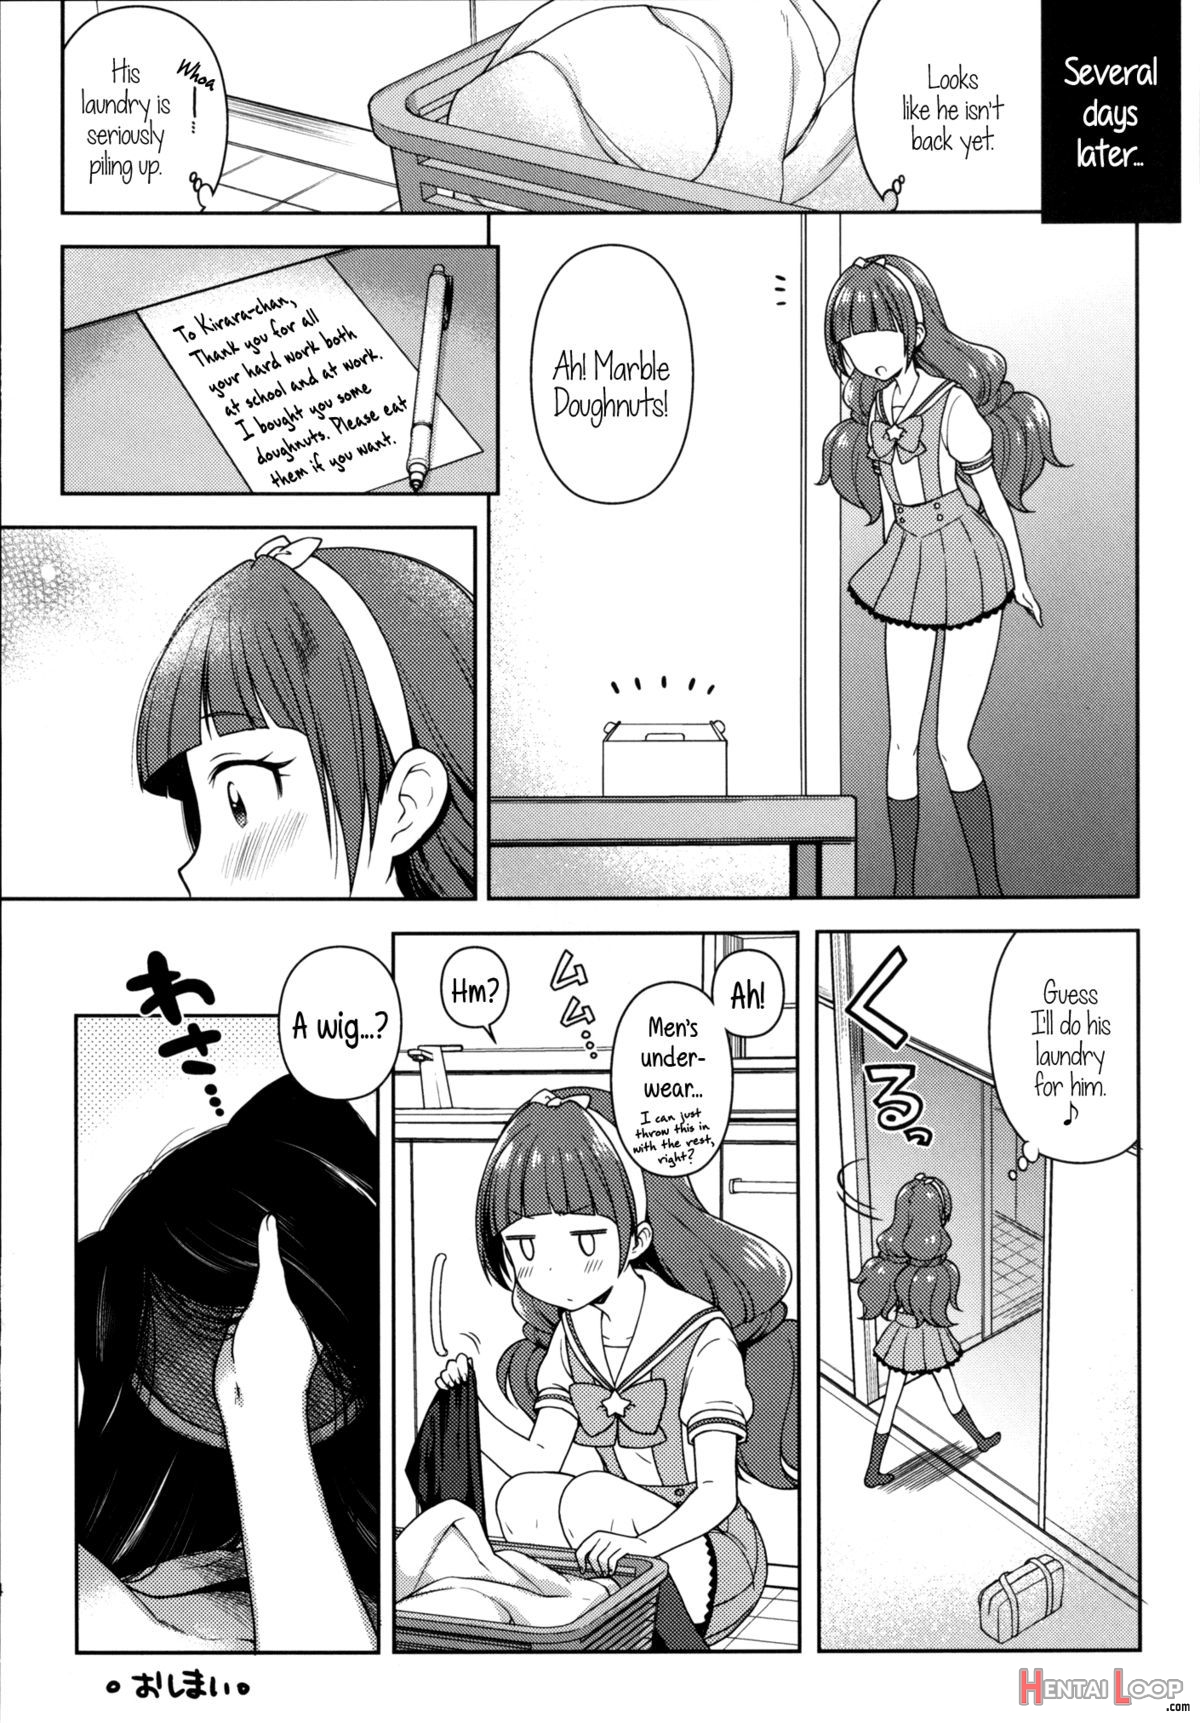 Kirara's Princess Lessons page 23